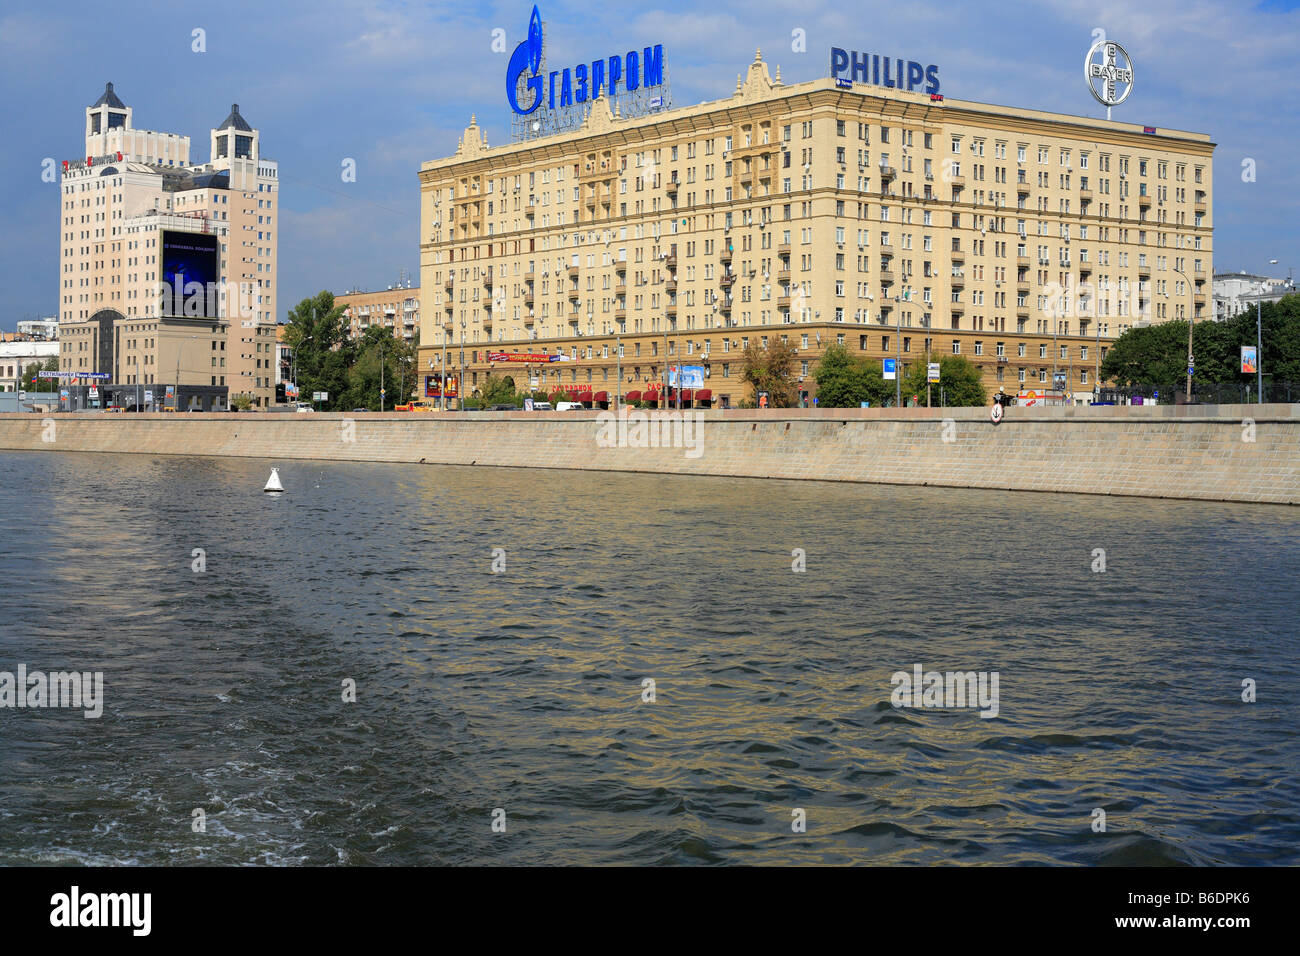 Haus mit Werbung von "Gazprom", Blick vom Fluss Moskwa, Moskau, Russland Stockfoto